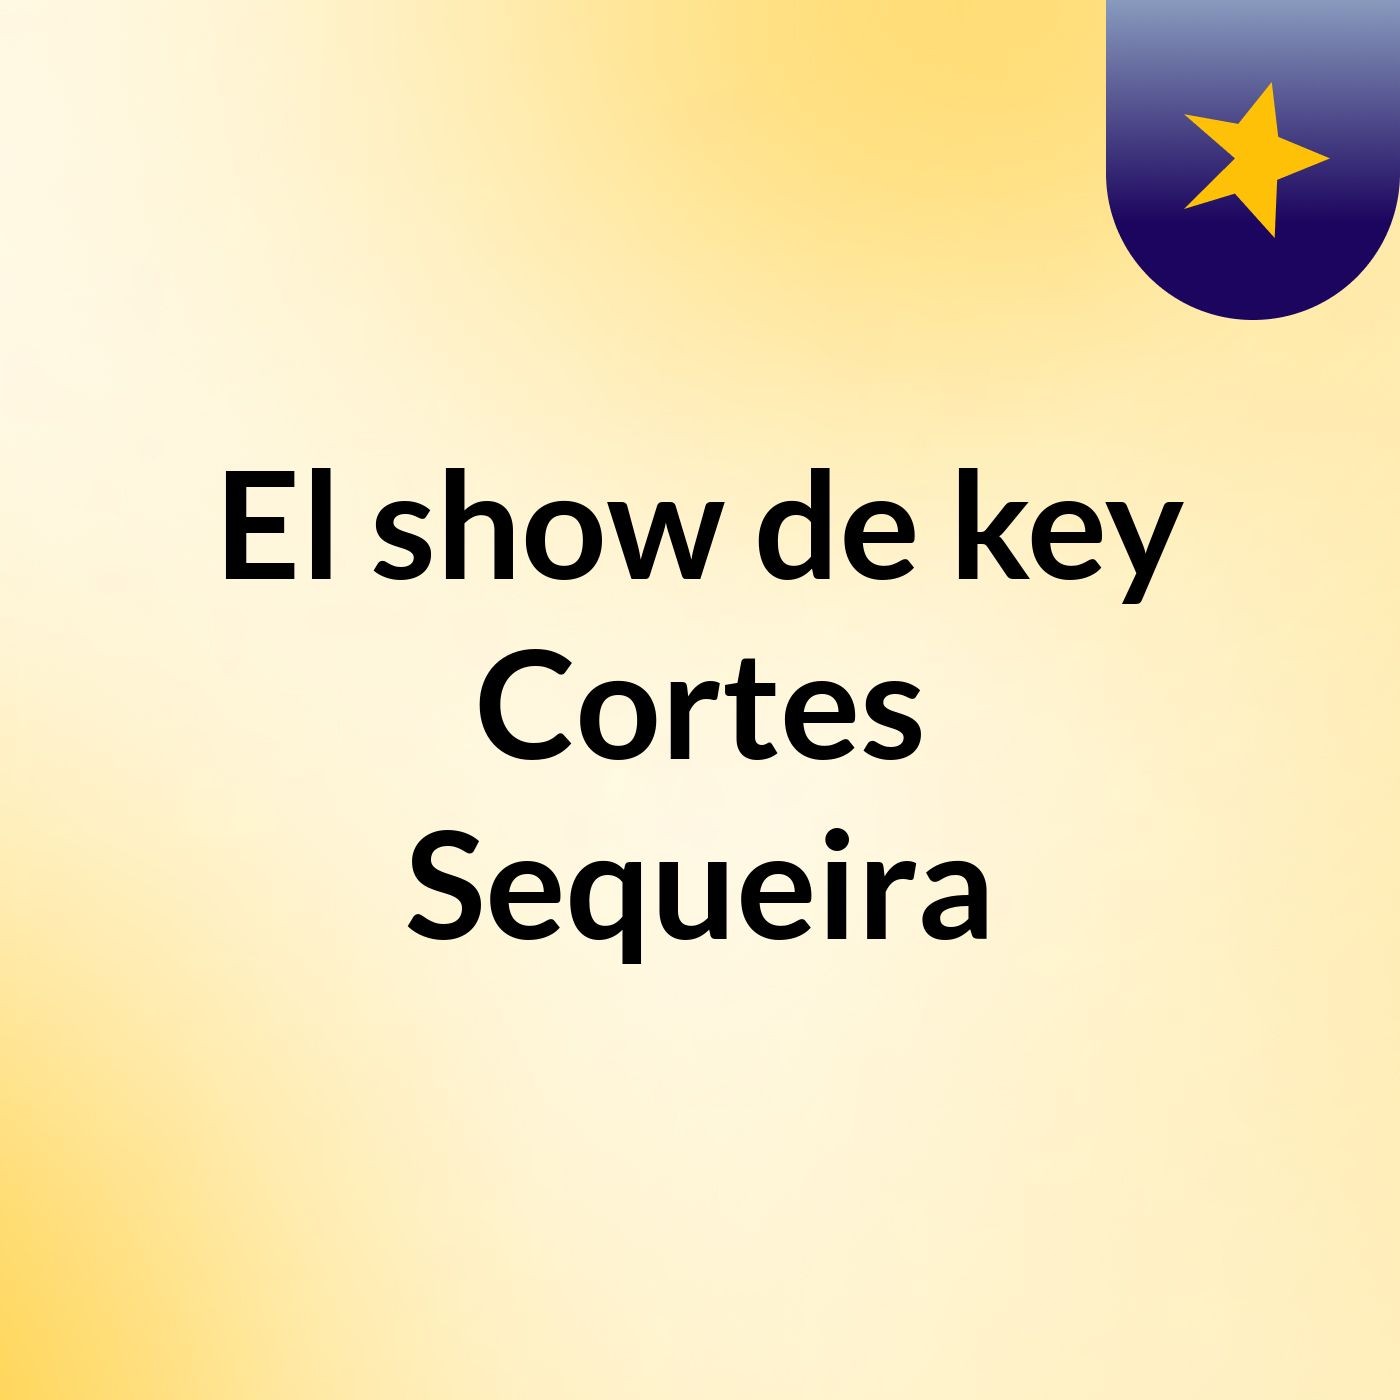 El show de key Cortes Sequeira